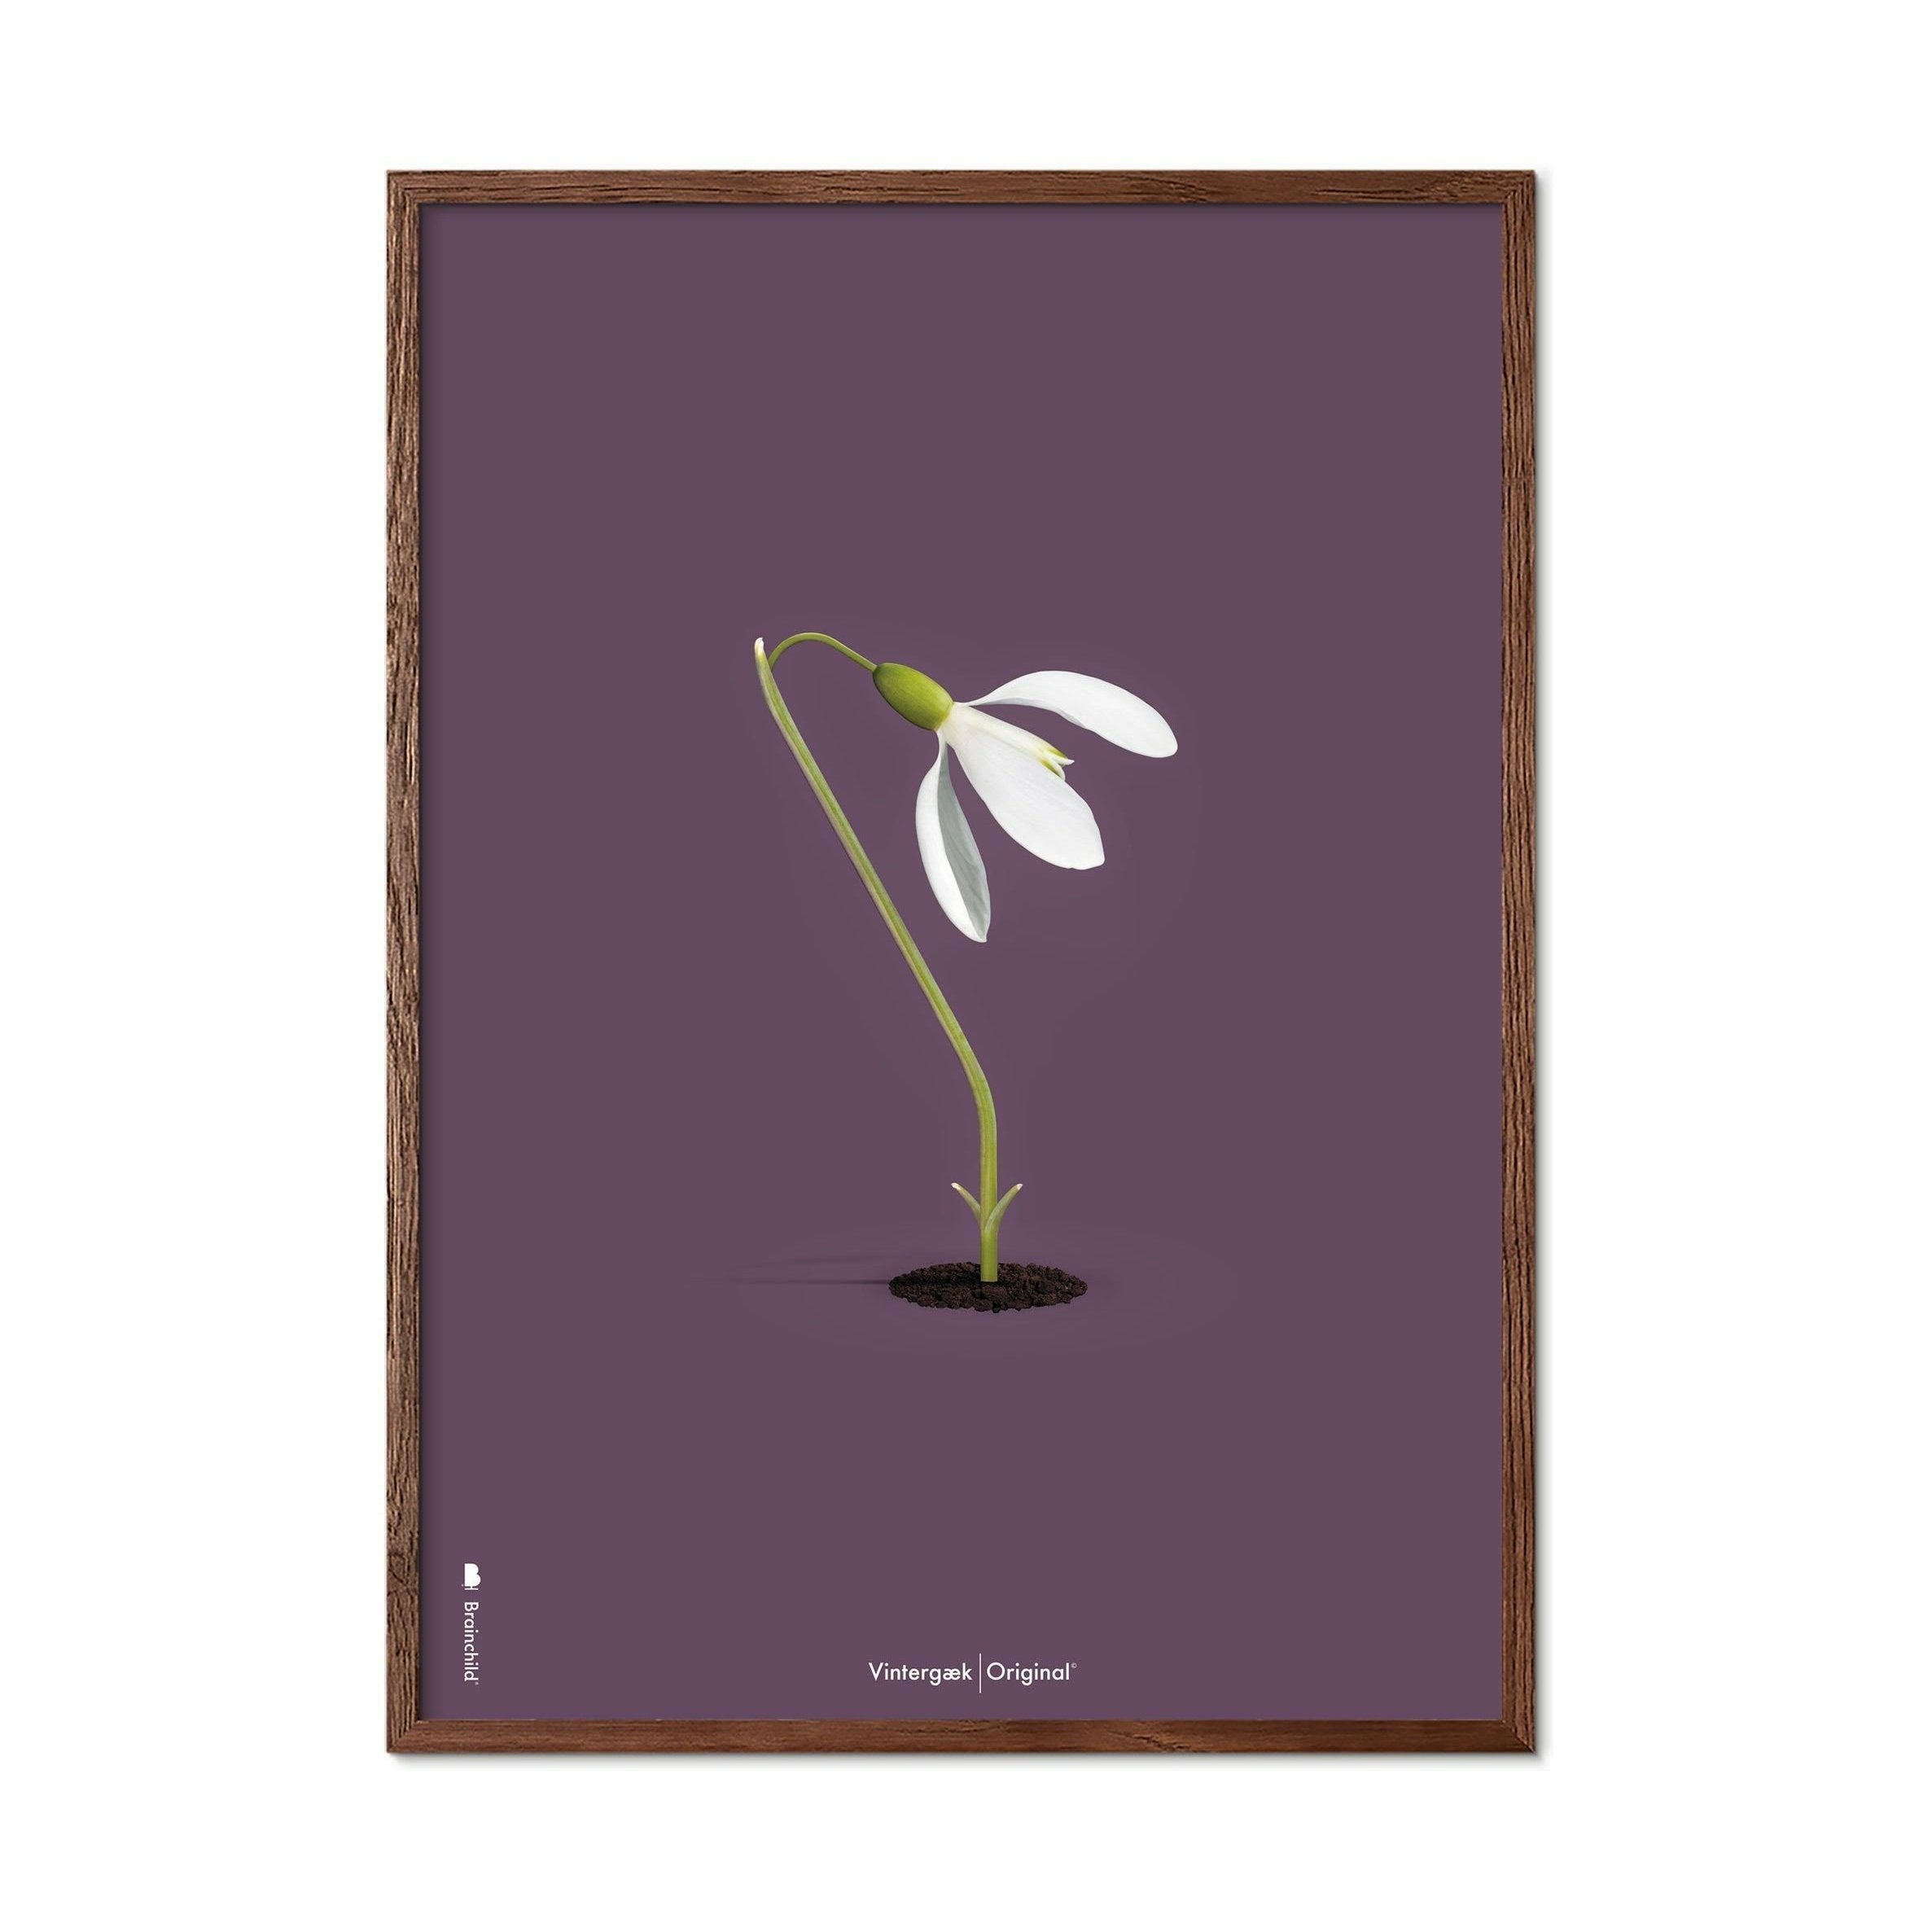 Brainchild Snowdrop Classic Poster, Dark Wood Frame A5, Purple Background